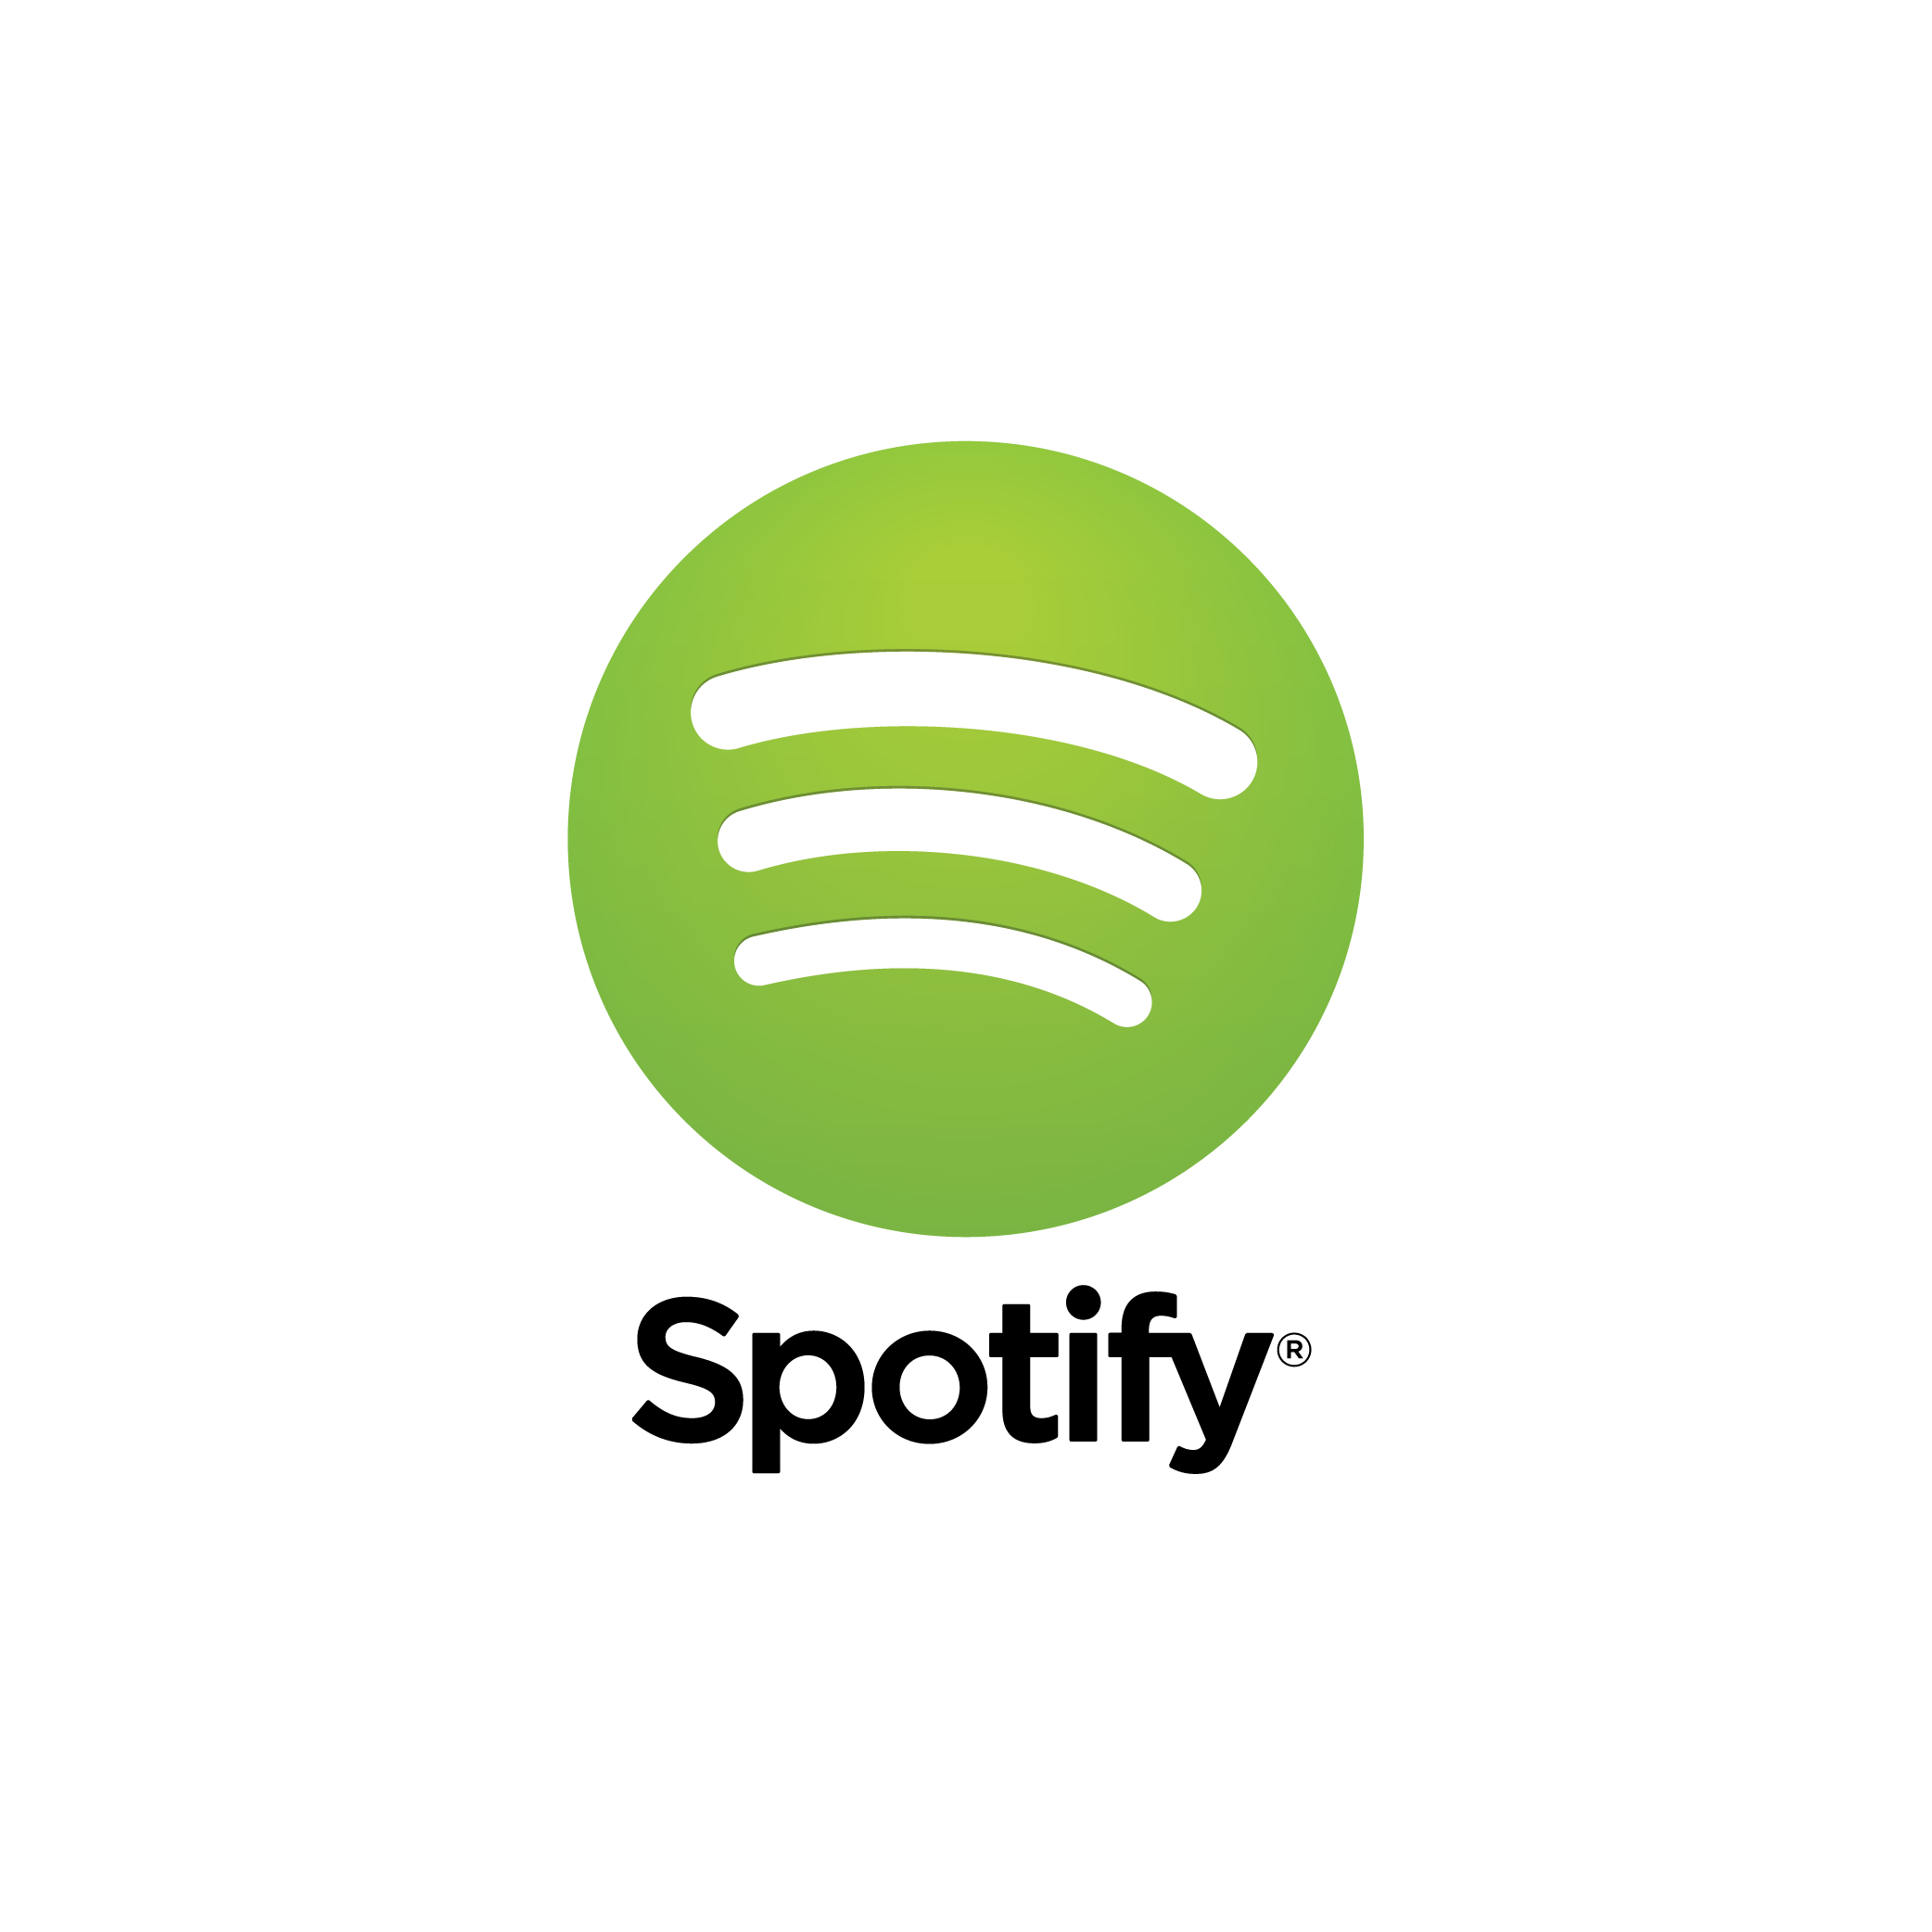 Spotify-01.png